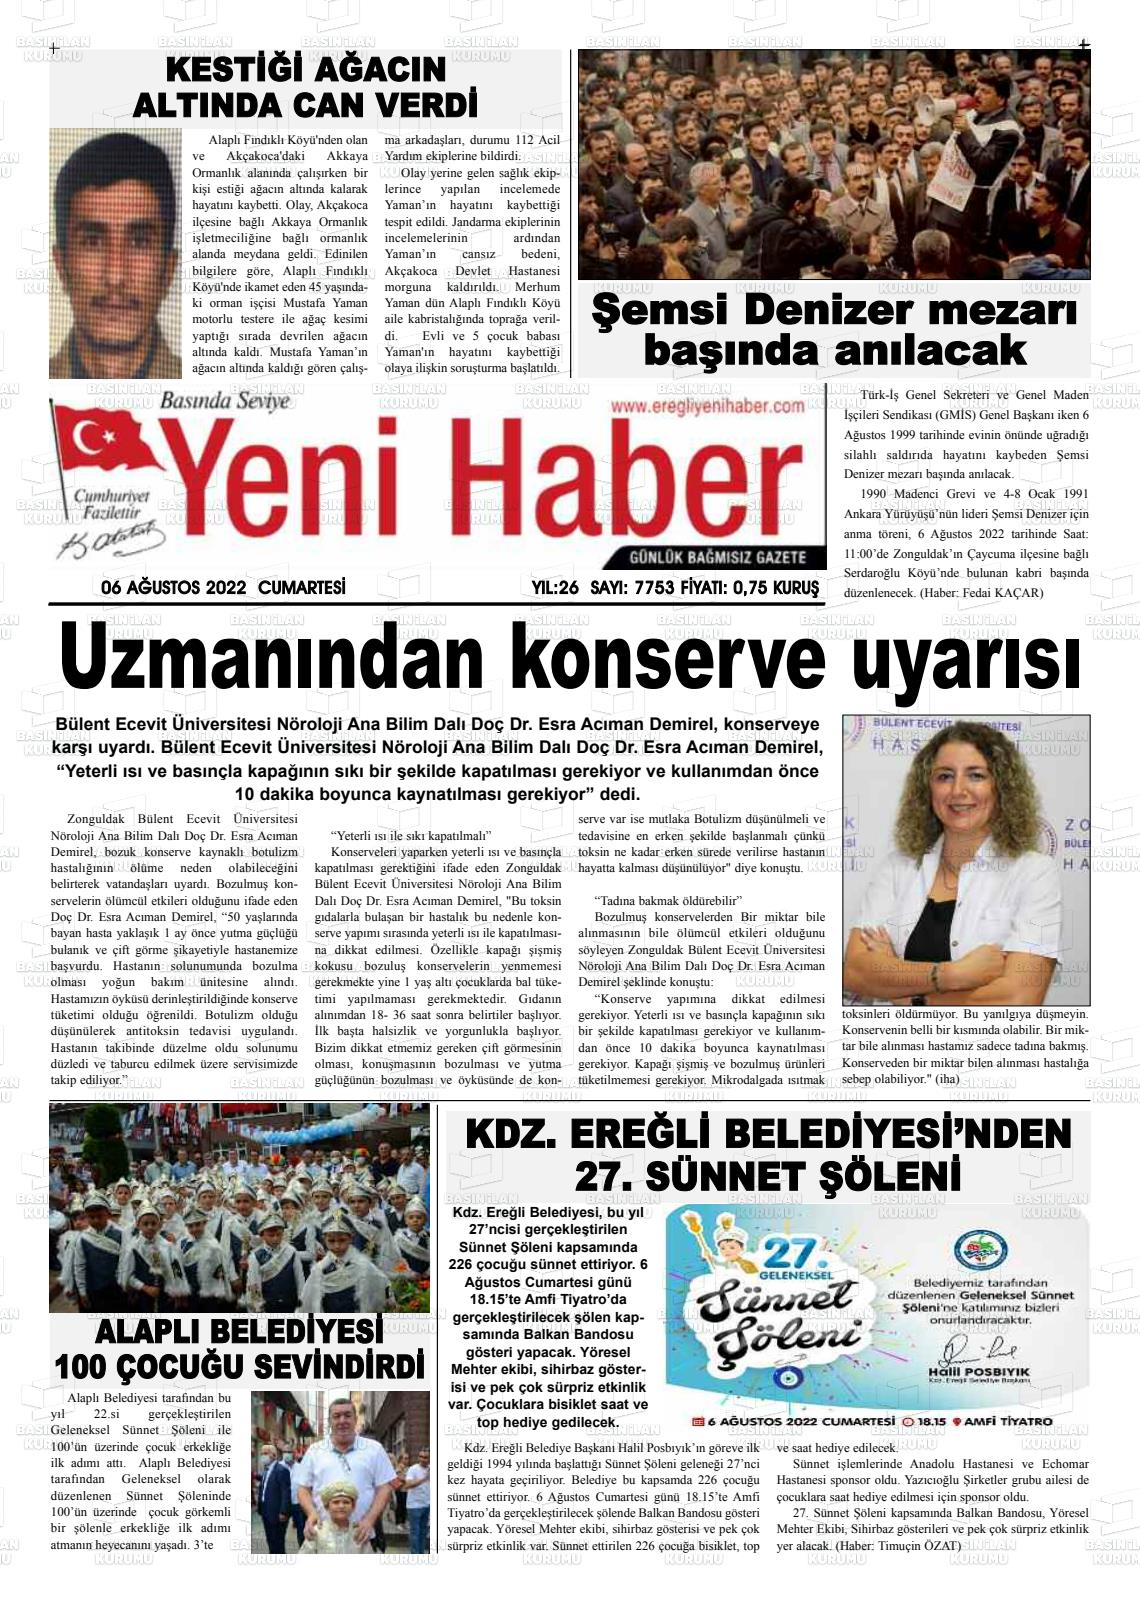 06 Ağustos 2022 Ereğli Yeni Haber Gazete Manşeti